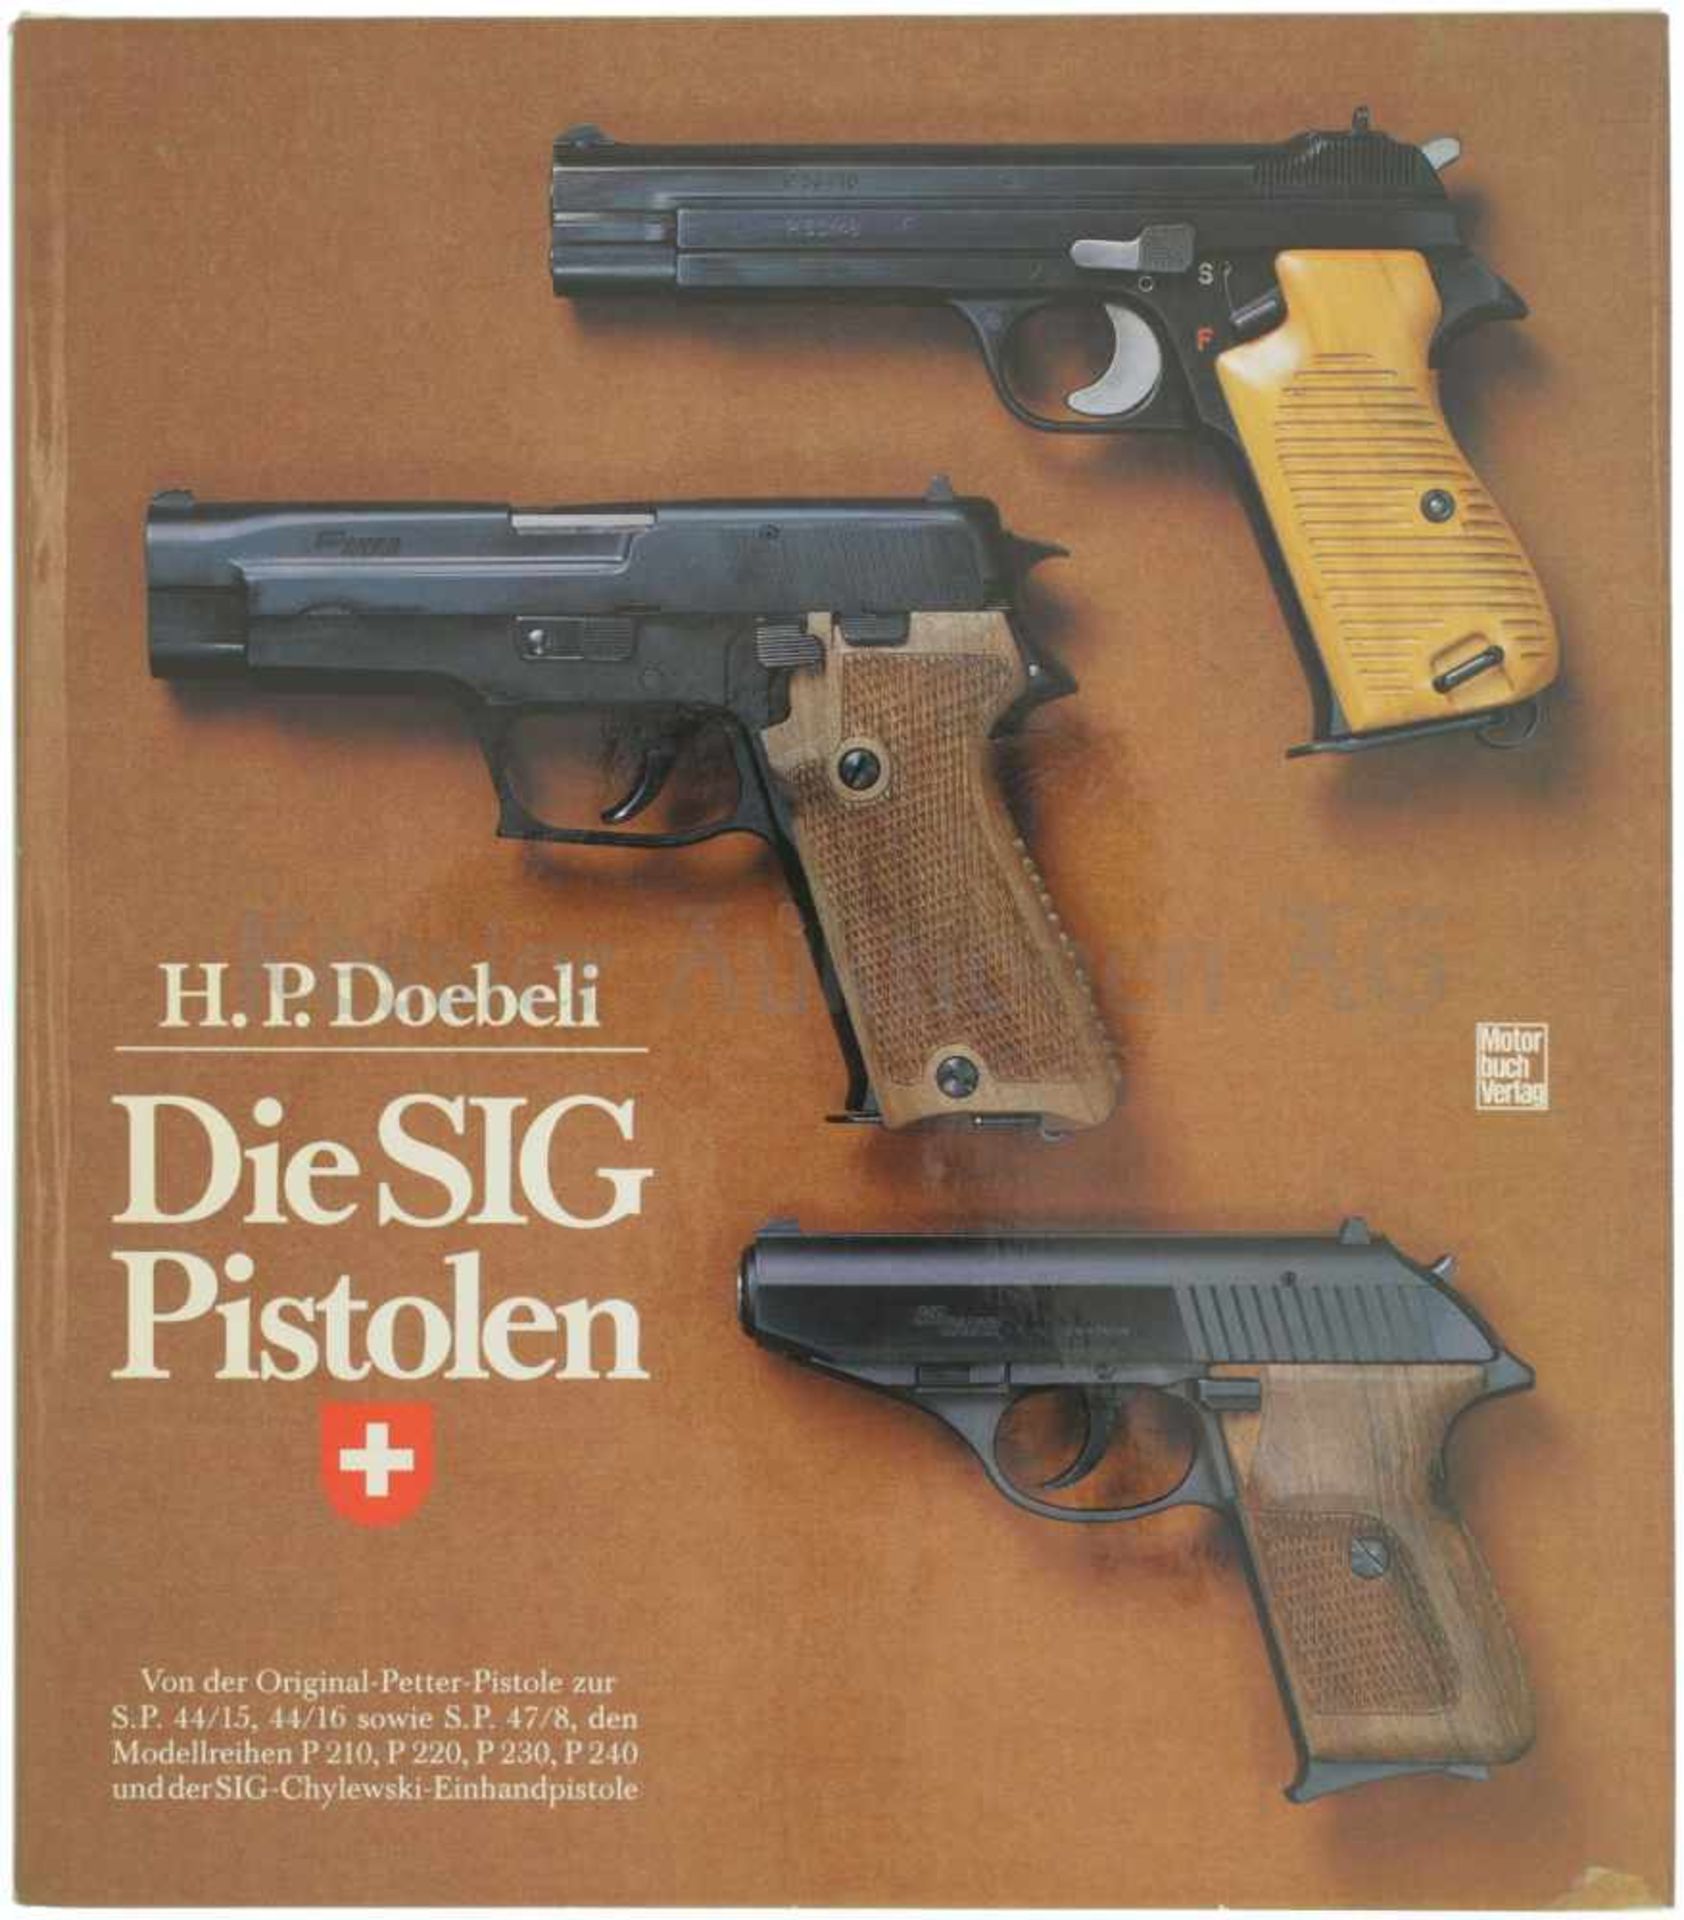 Die SIG Pistolen Der Autor H.P. Doebeli beschreibt auf 190 Seiten interessant den Werdegang der